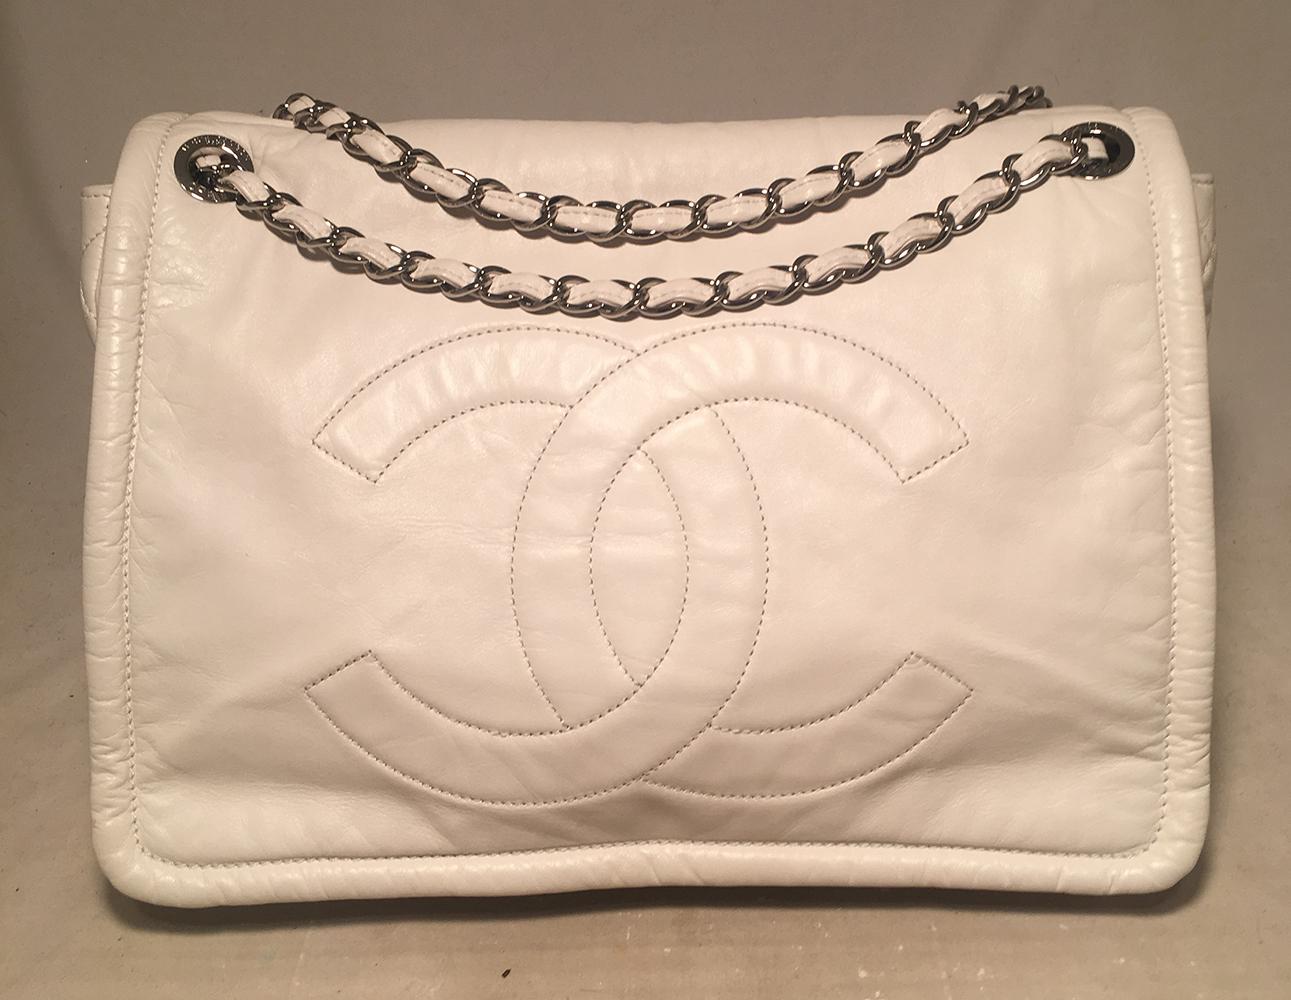 Chanel White Leather Quilted CC logo XL Maxi Classic Top Flap Shoulder Bag in ausgezeichnetem Zustand. Außen aus weißem Kalbsleder mit dem charakteristischen CC Logo auf der oberen Klappe, gesteppten Seiten mit Rautenmuster und Schlitztasche auf der